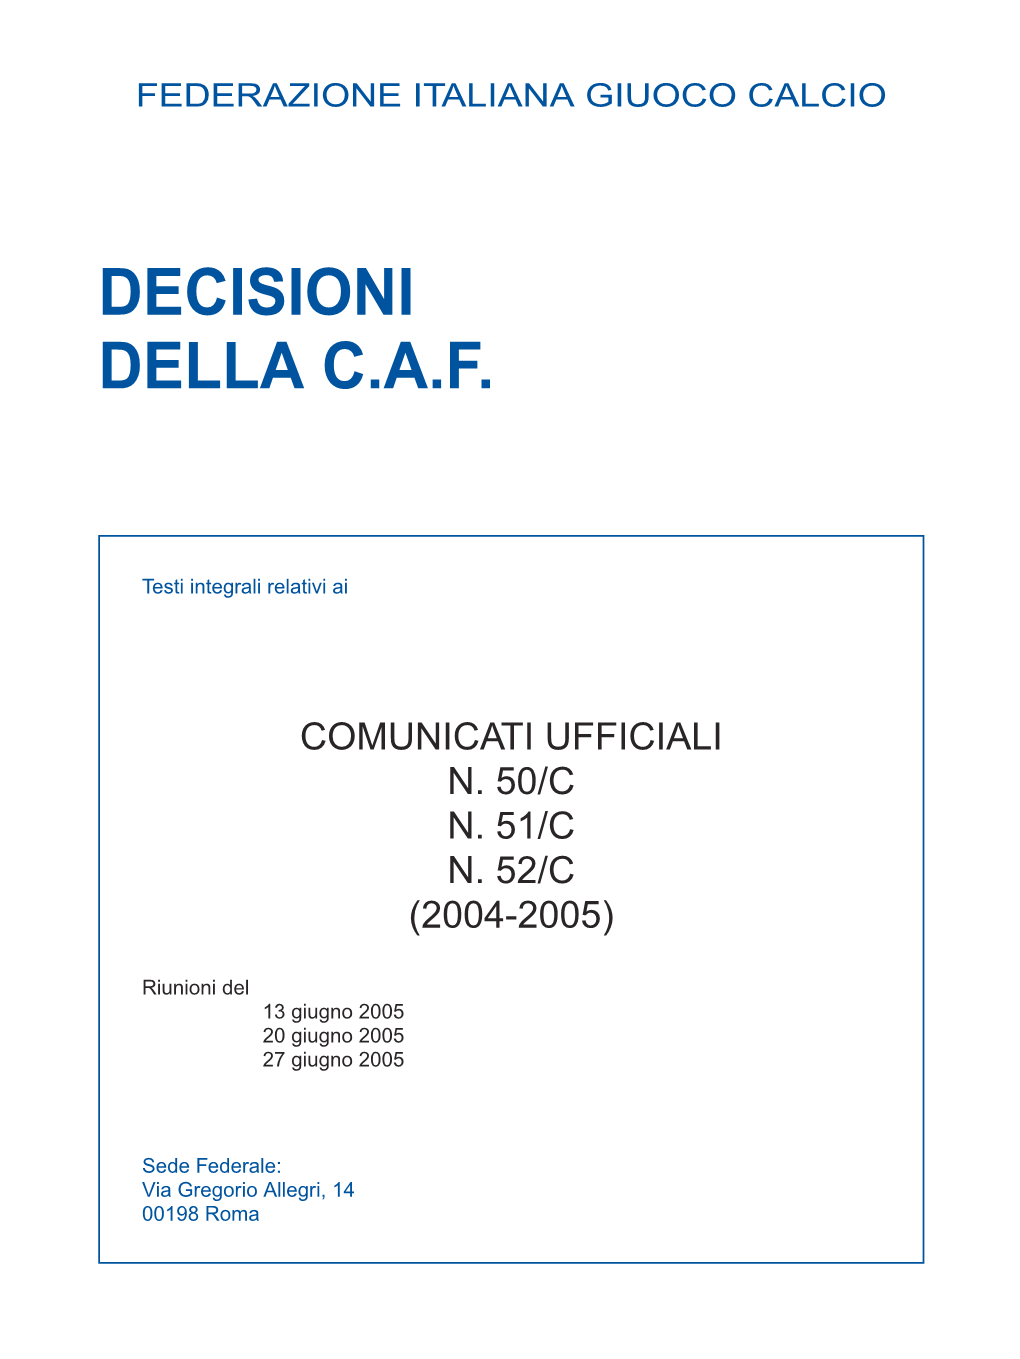 Decisioni Della C.A.F